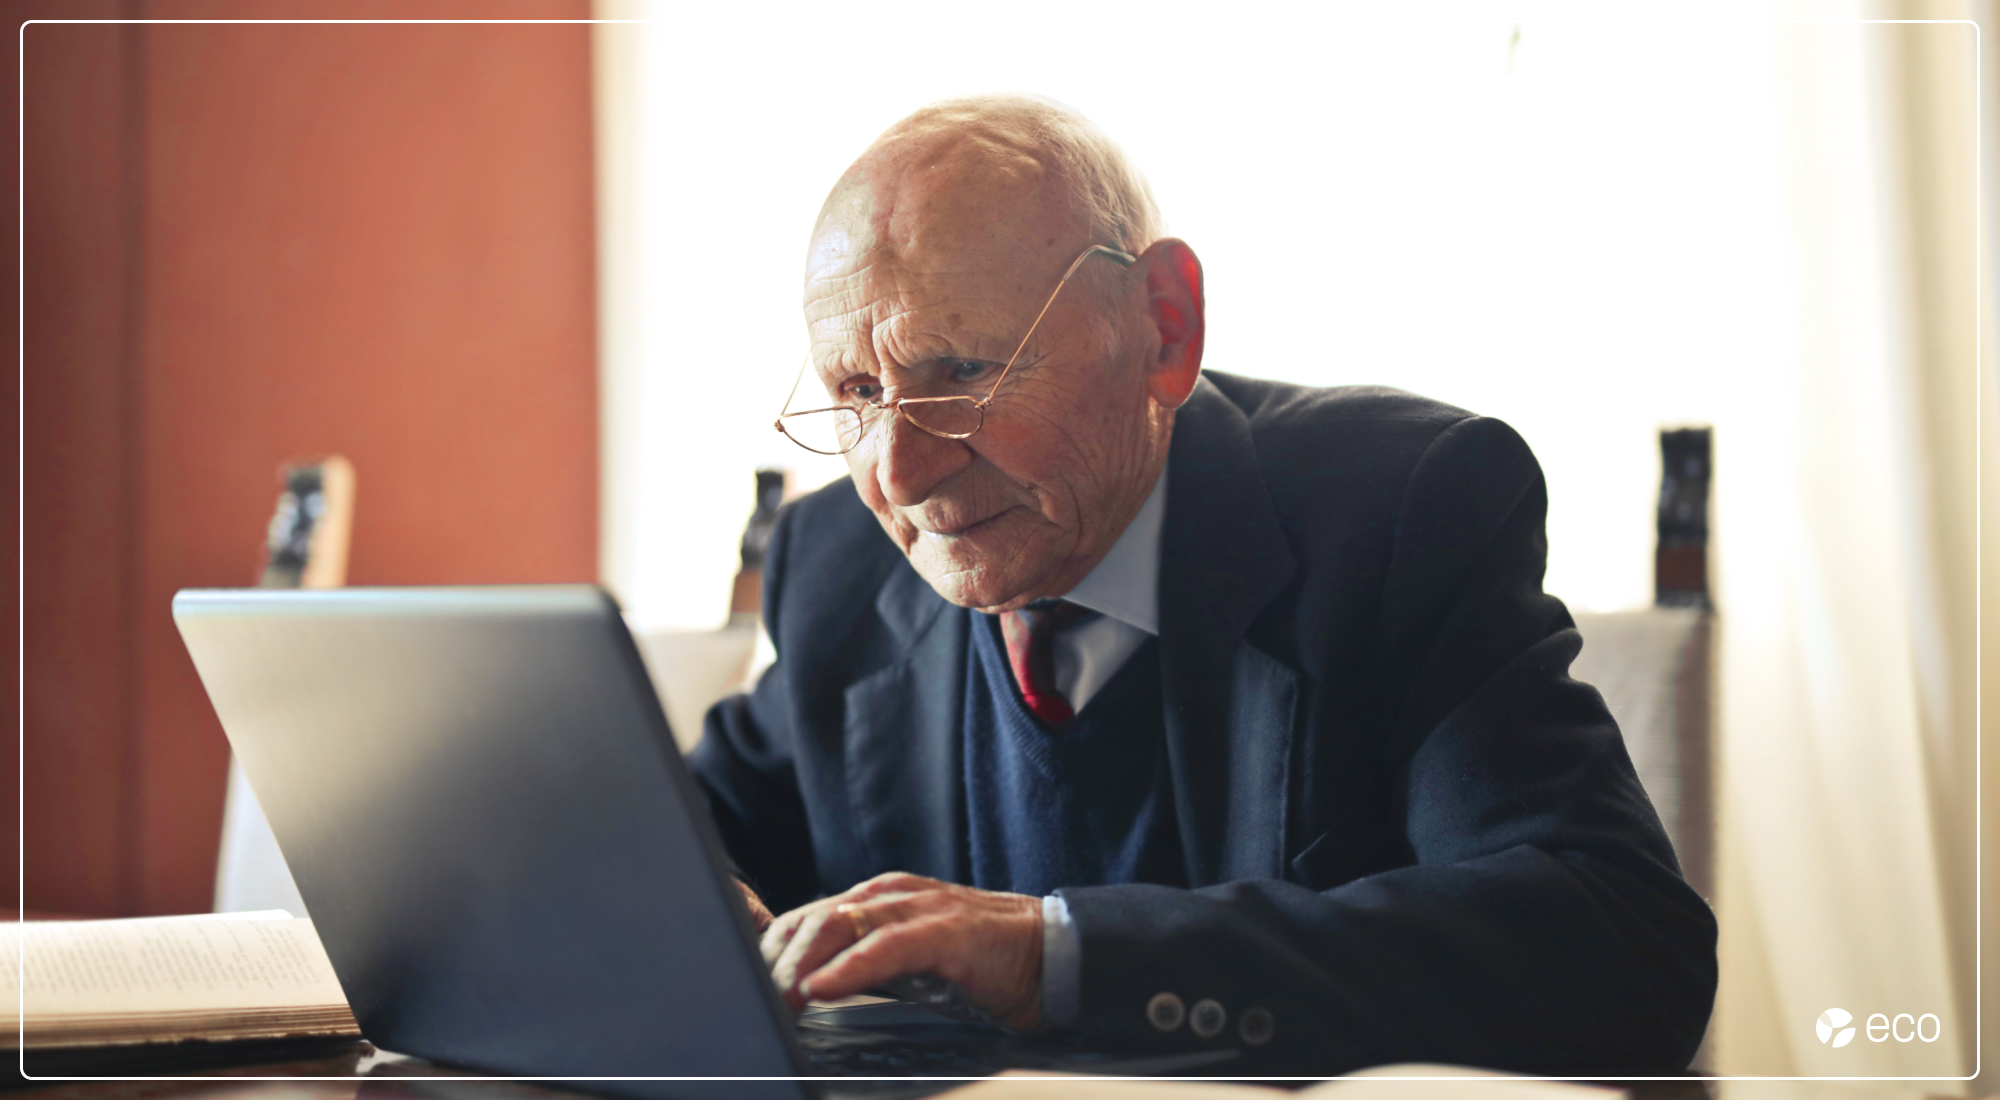 Elder man writing on a laptop